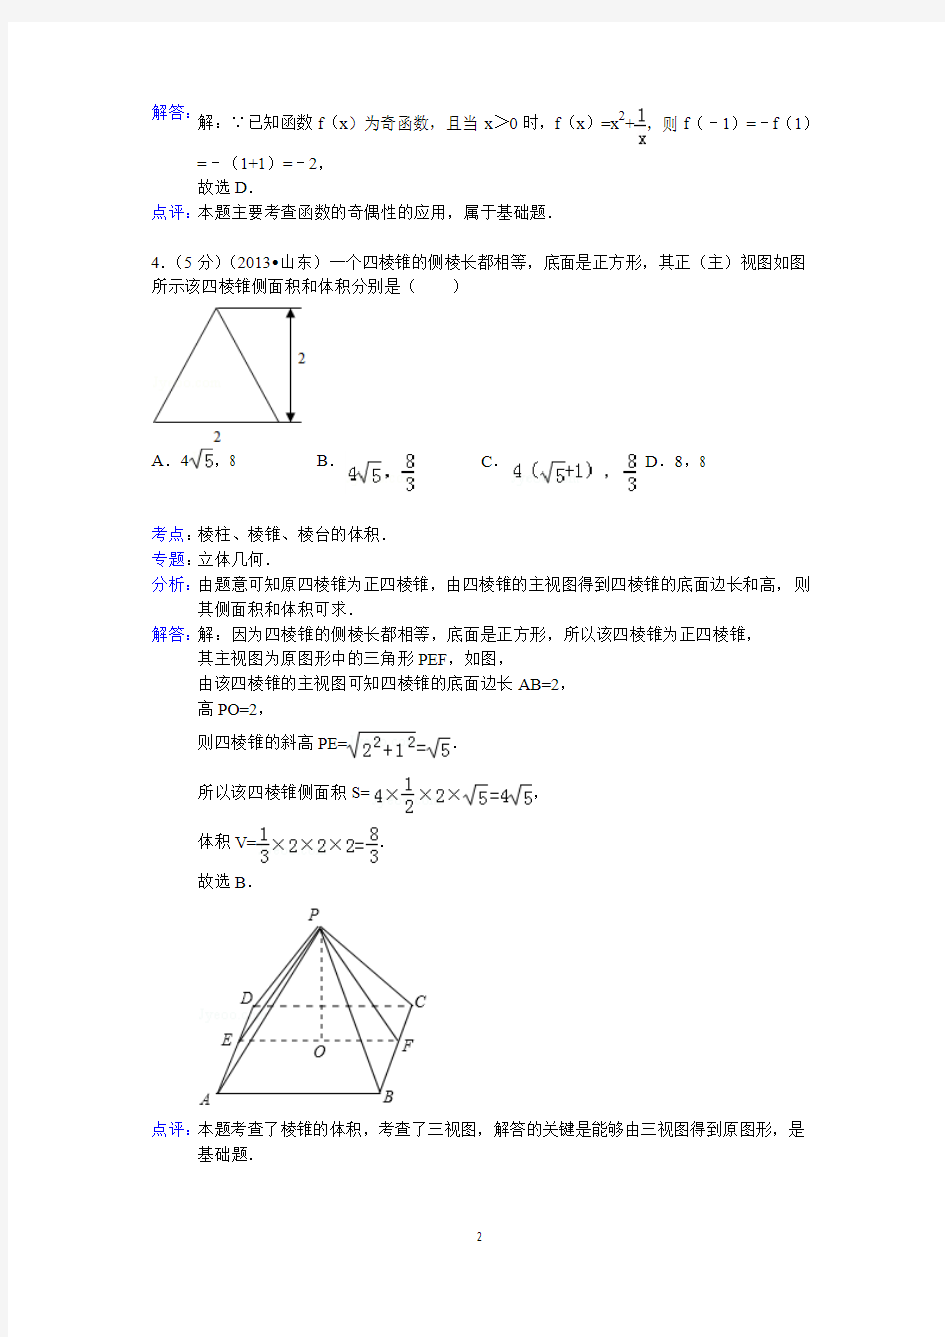 2013年山东省高考数学试卷(文科)答案与解析